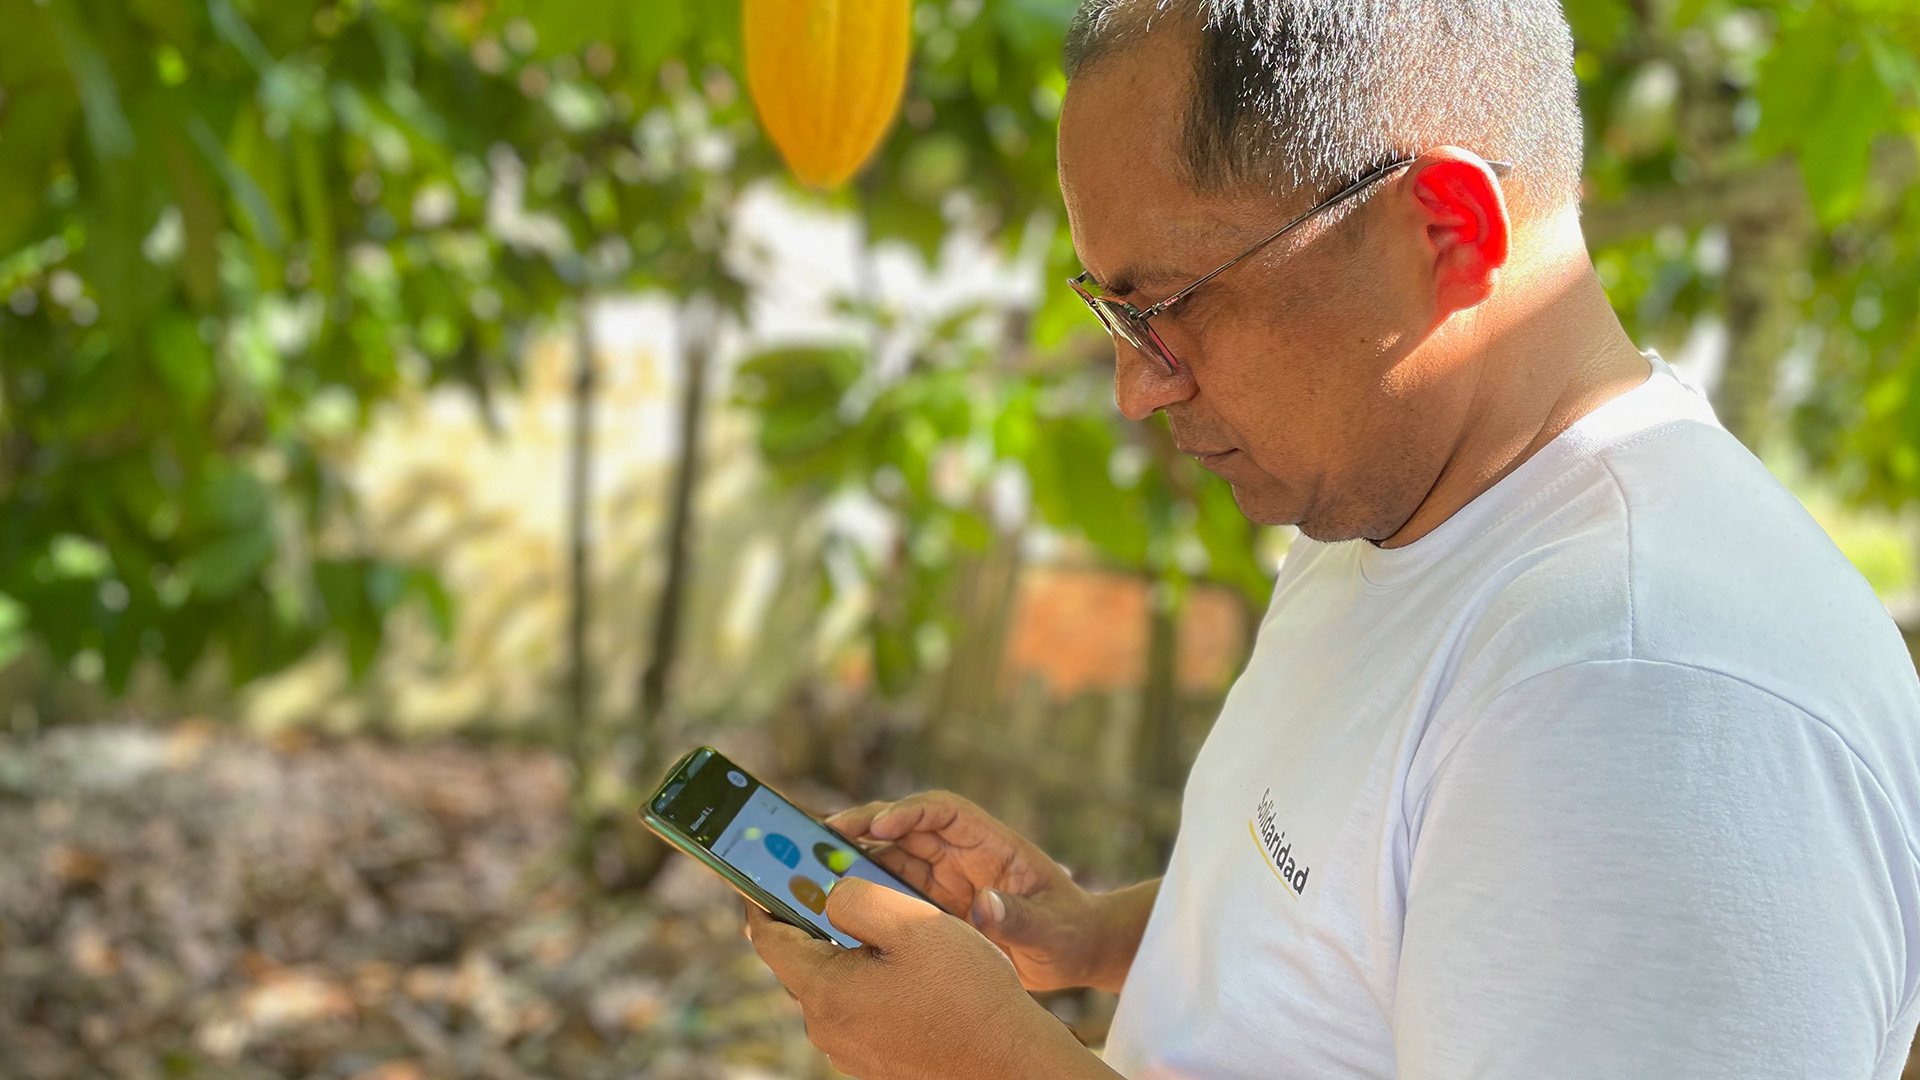 soluções digitais para sistemas agroecológicos na Amazônia